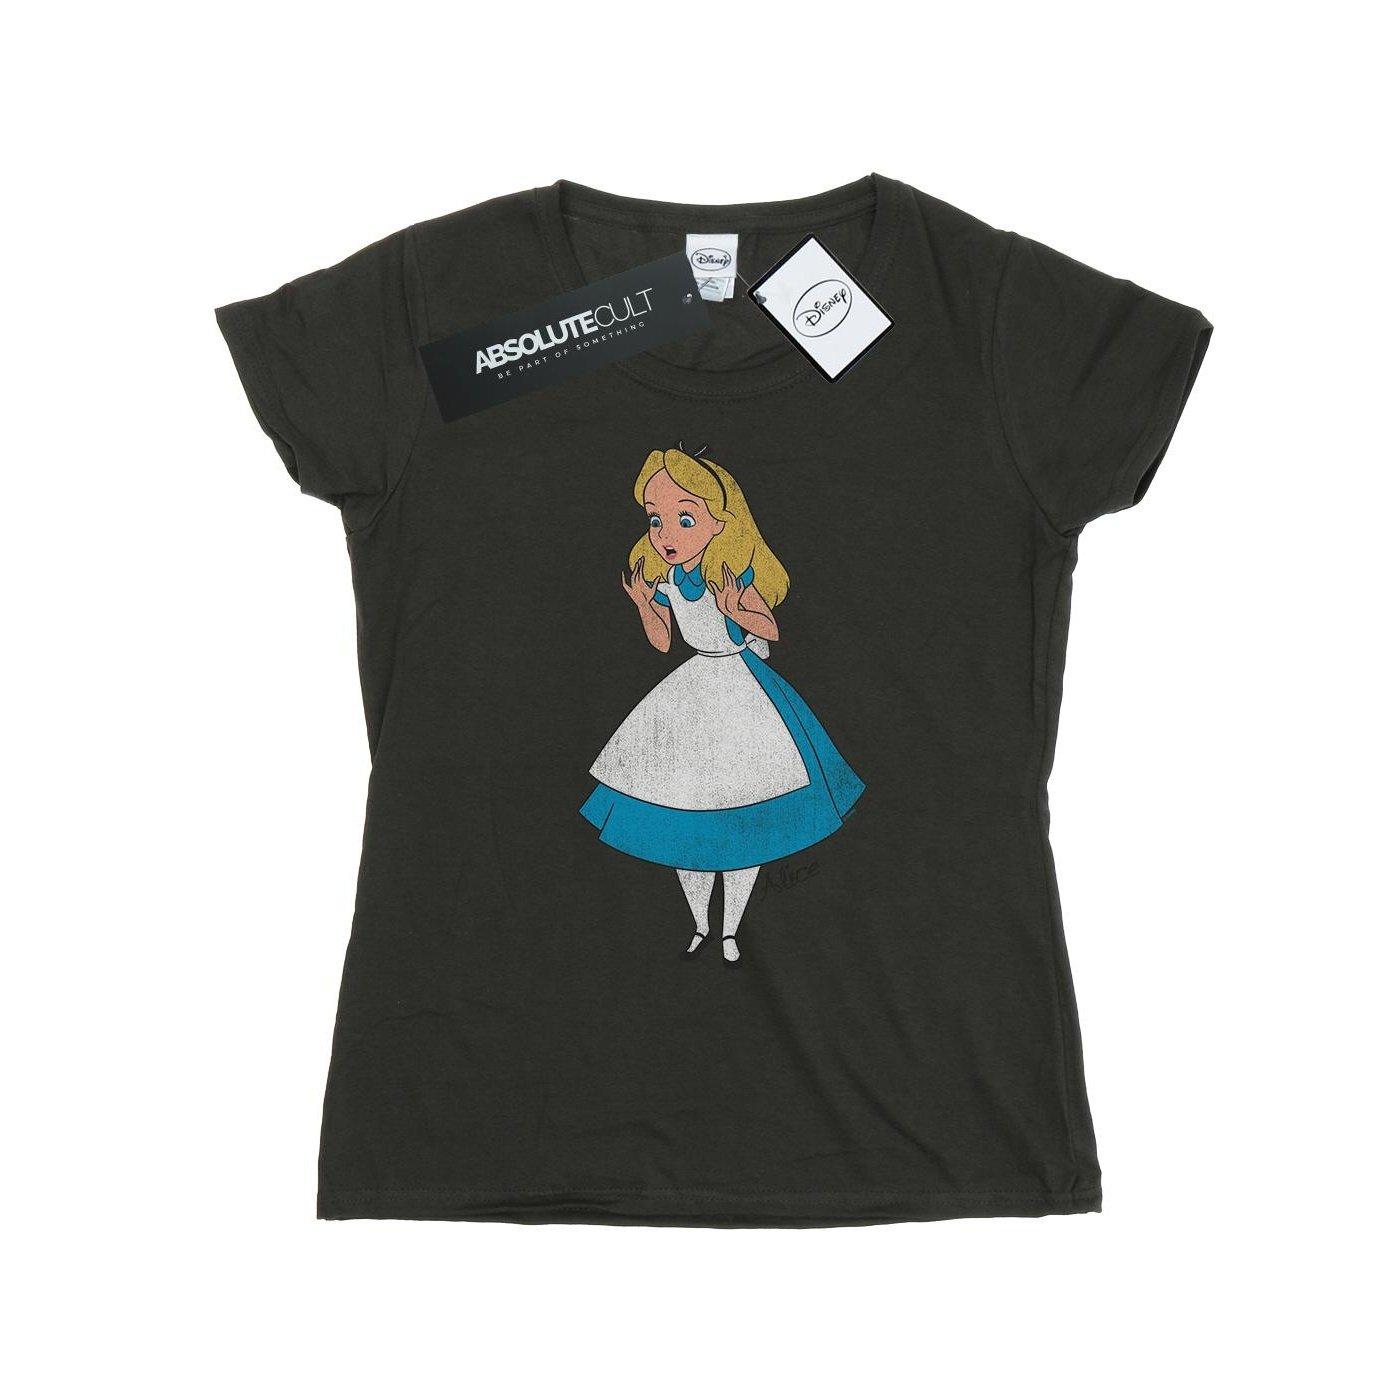 Tshirt Damen Taubengrau XS von Alice in Wonderland